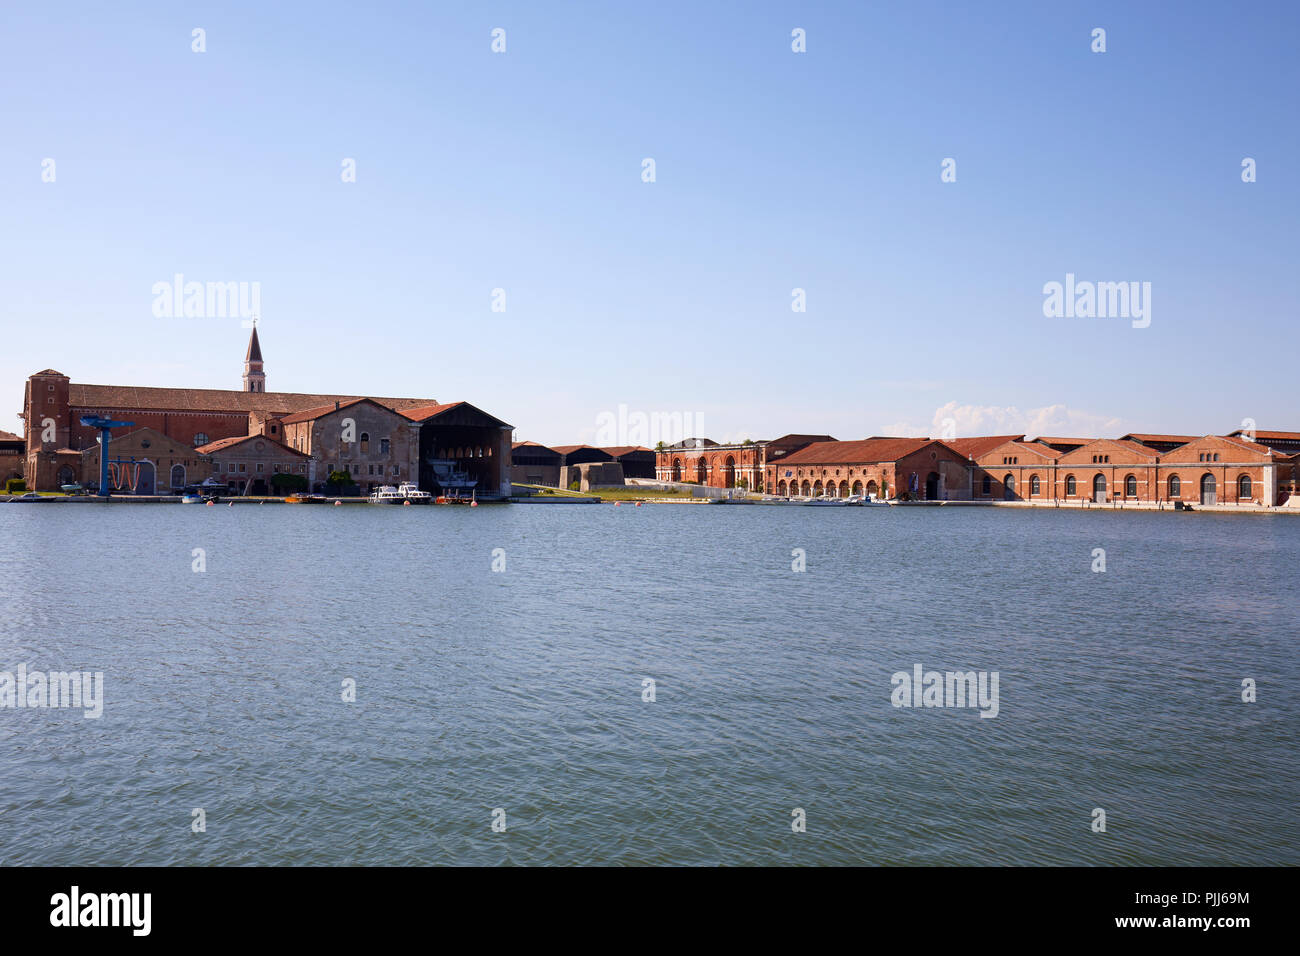 Arsenal veneciano astillero, canal industrial y edificios de ladrillo rojo en un día soleado en Venecia, Italia Foto de stock